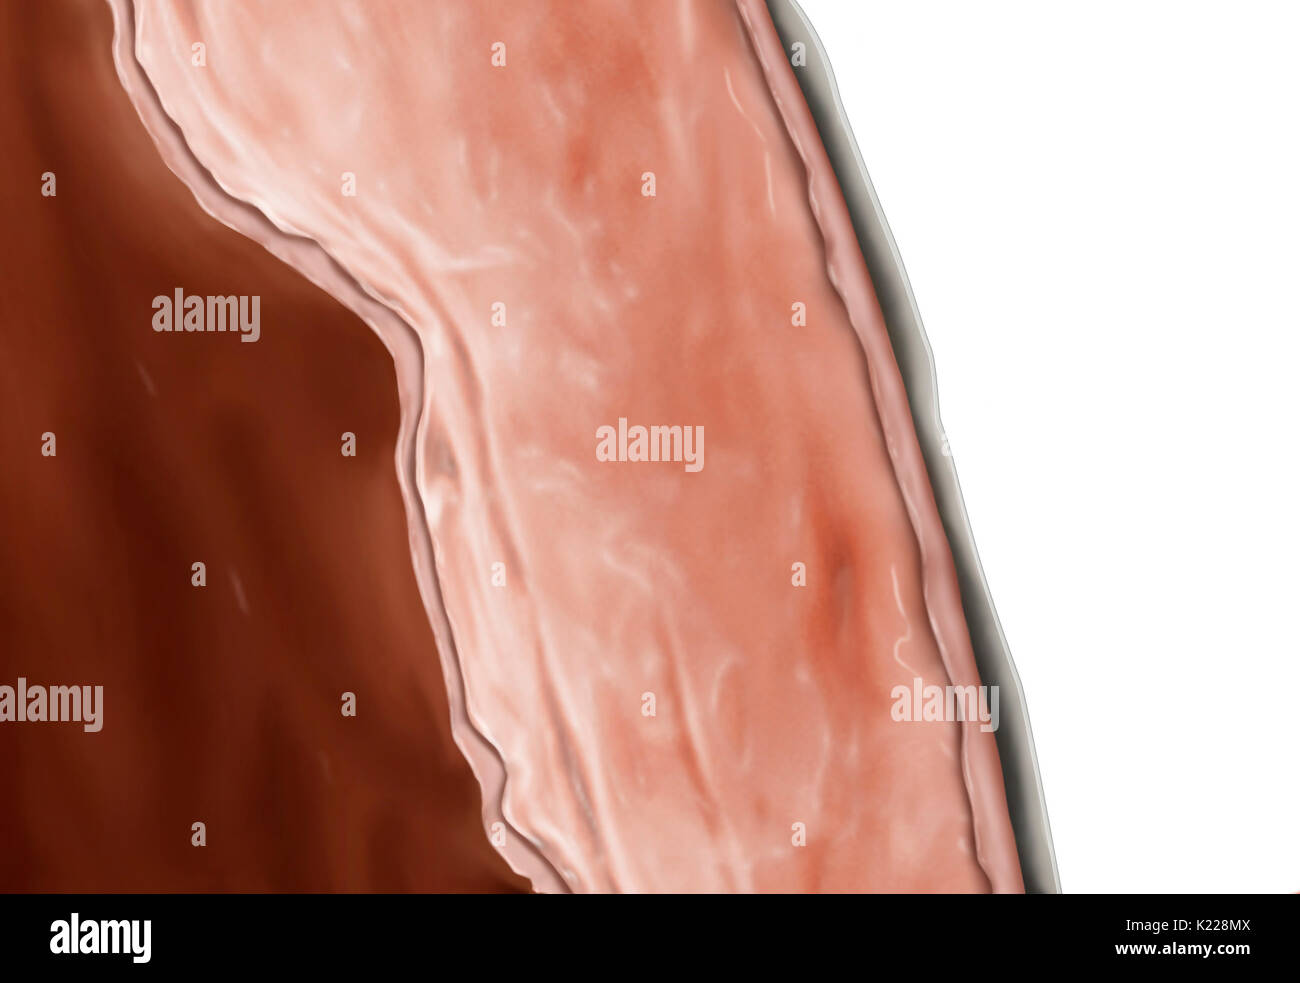 Le myocarde est composé de fibres musculaires qui forment la couche la plus épaisse de la paroi cardiaque. Banque D'Images